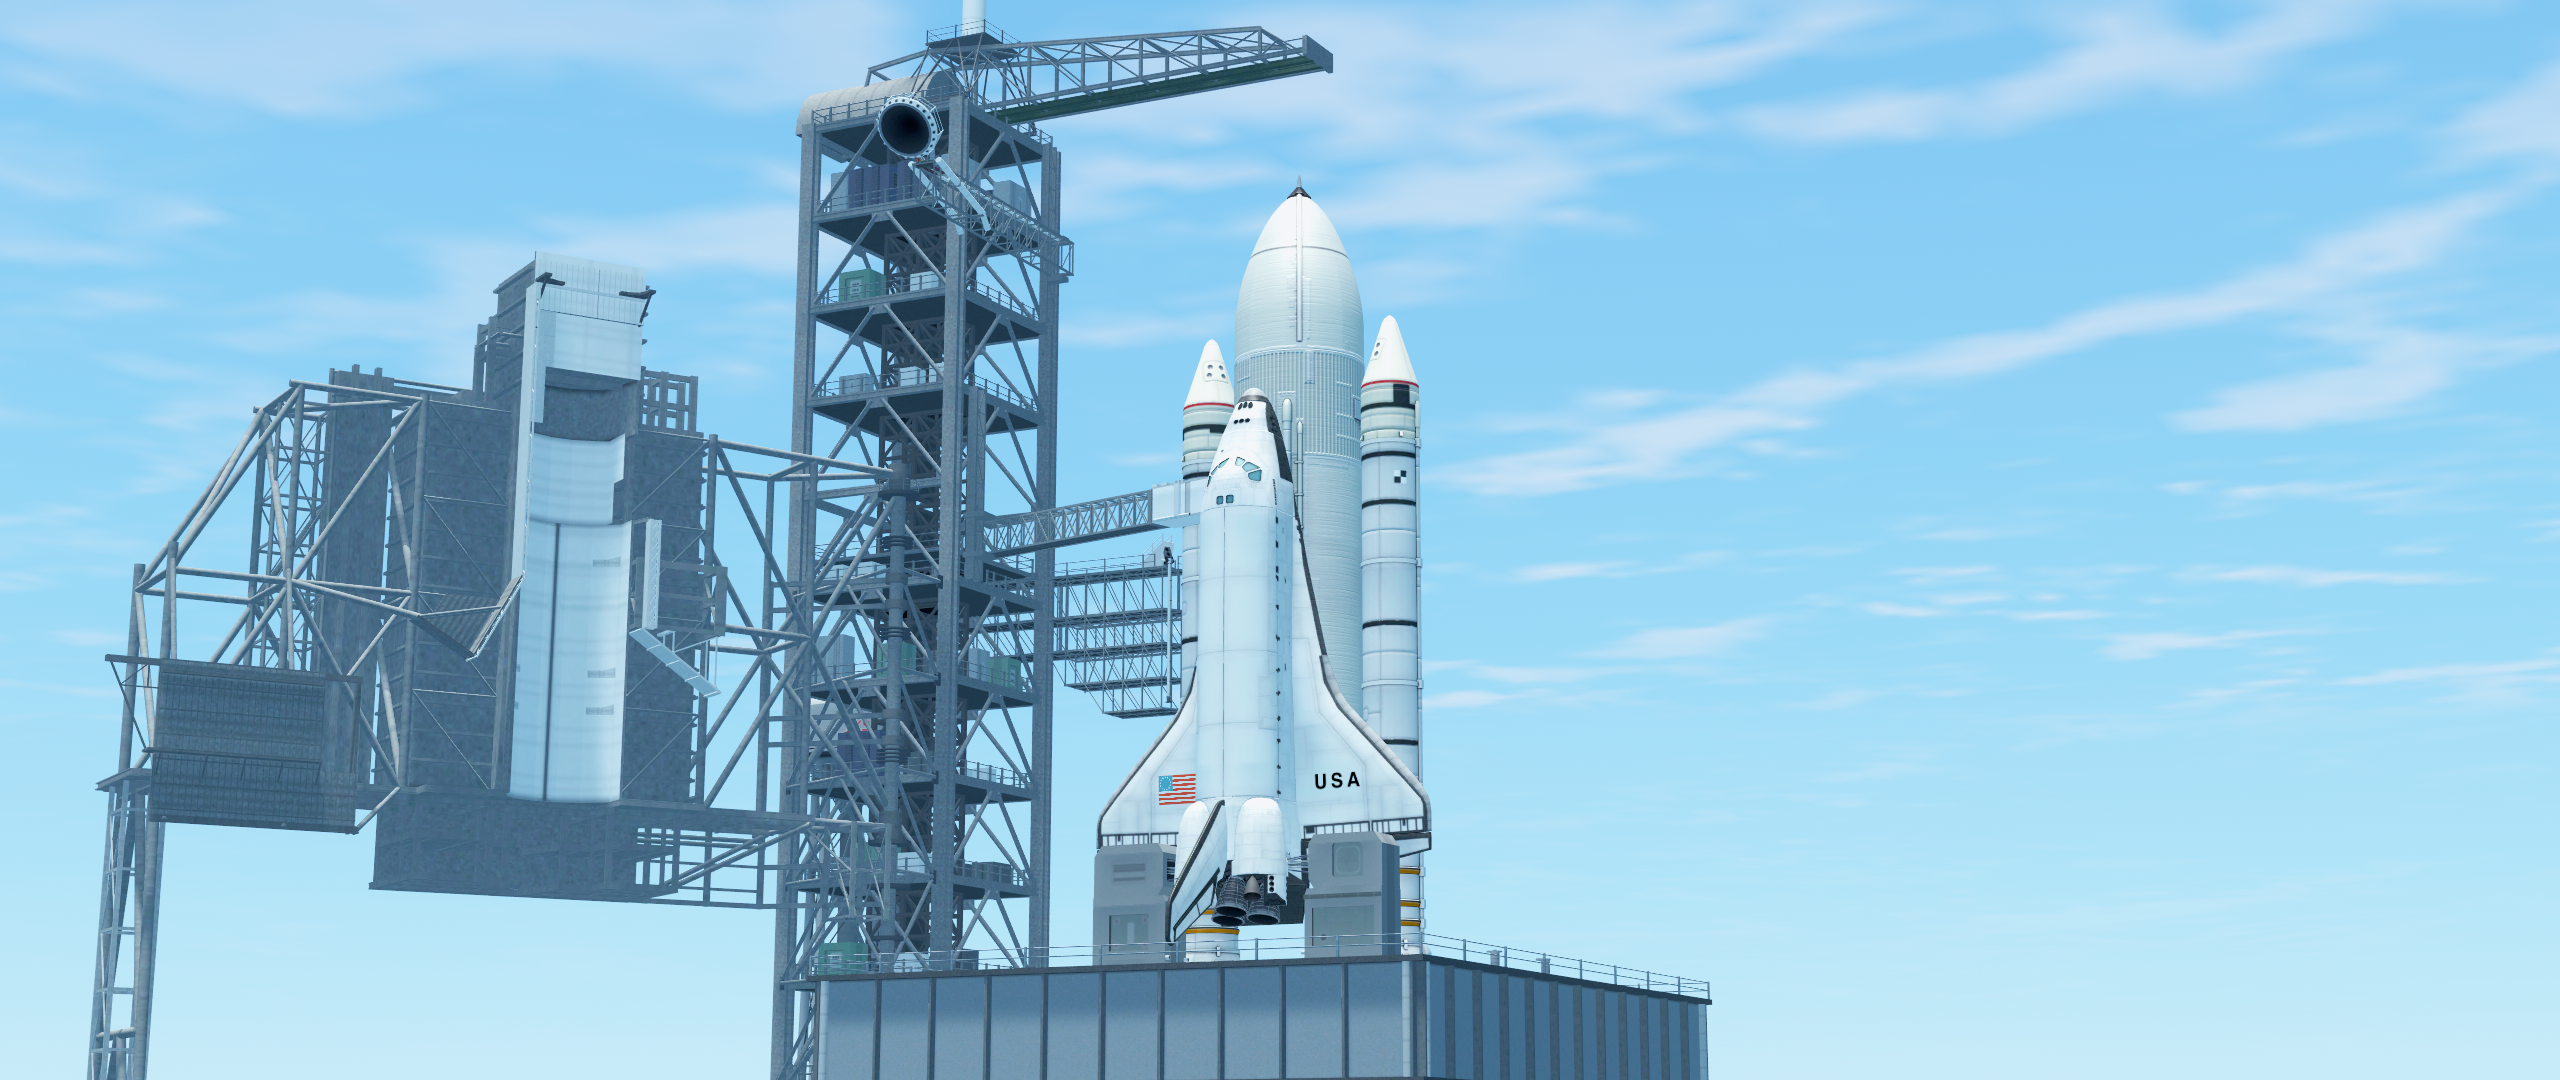 shuttle orbiter construction kit